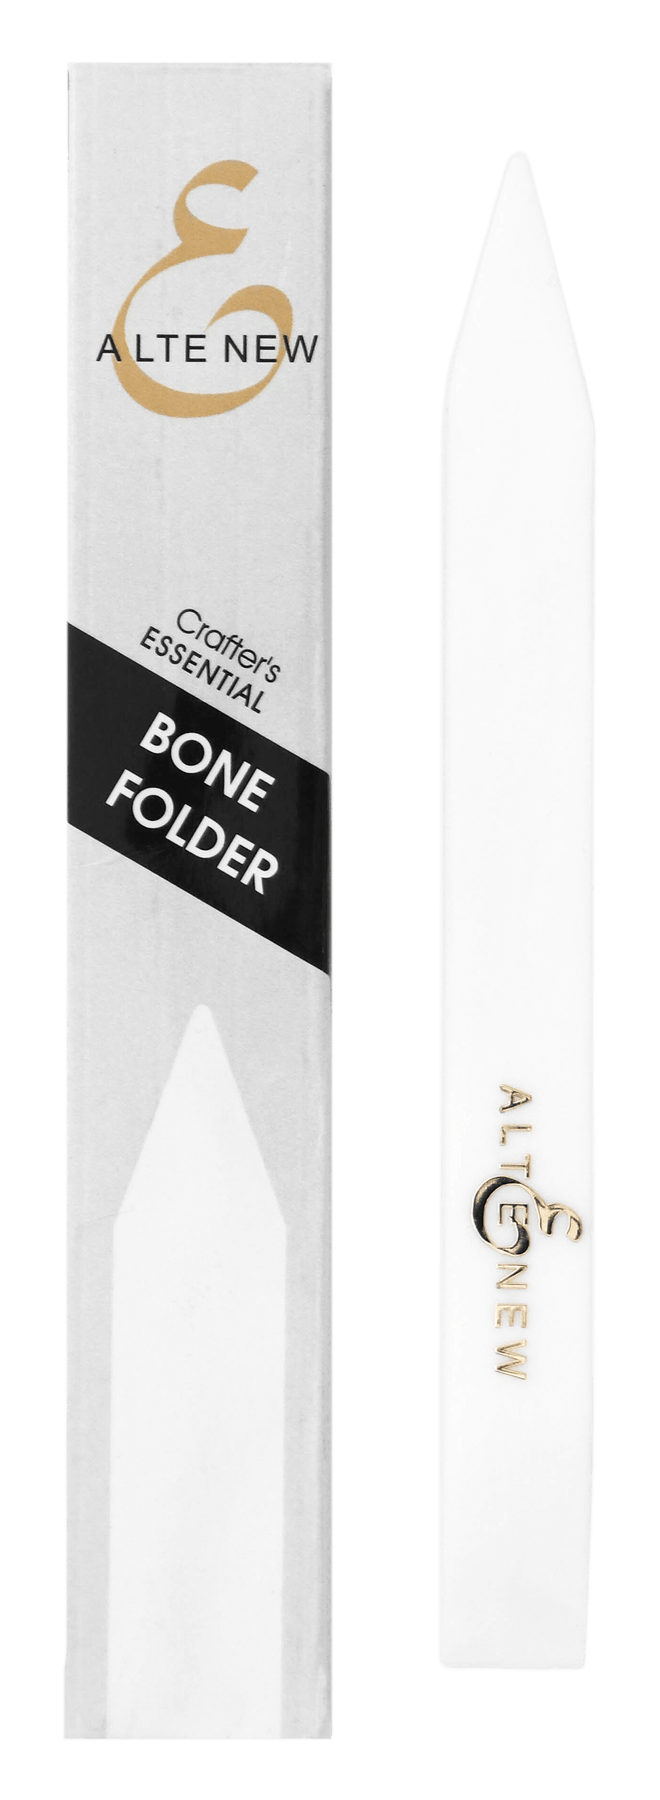 Altenew - Crafter's Essential Bone Folder